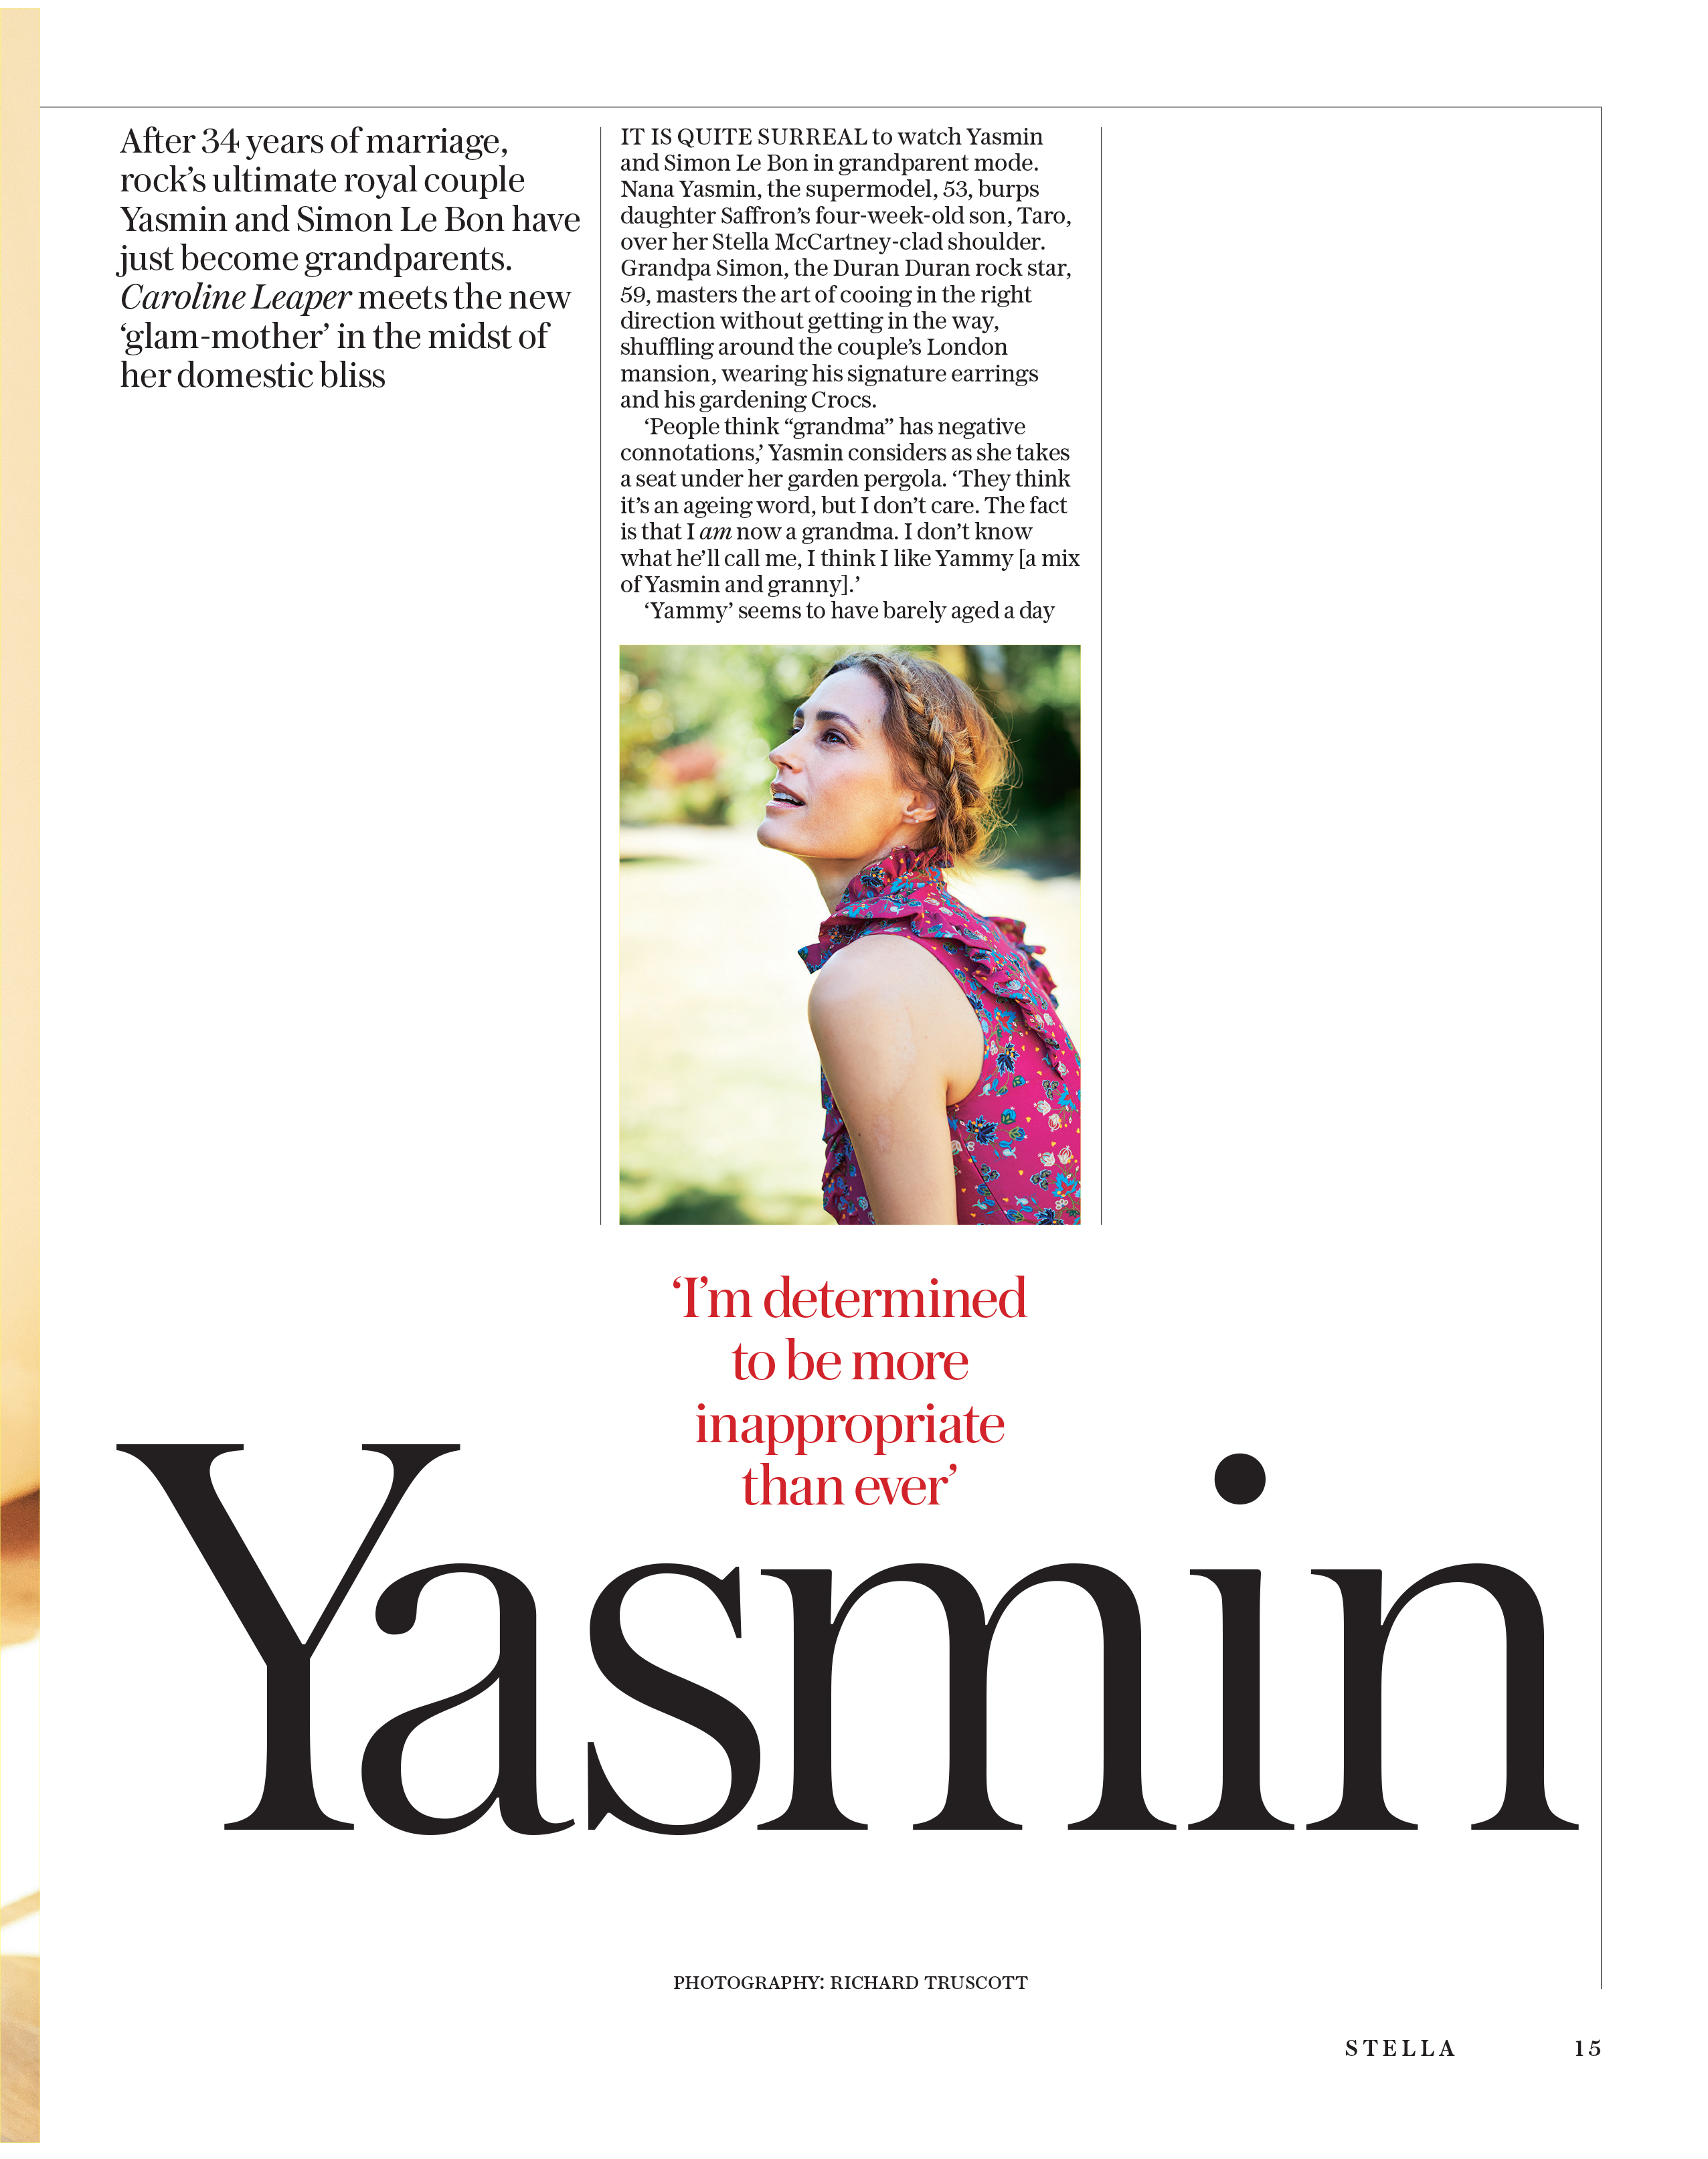 Yasmin Le Bon Sunday Telegraph Magazine_15-07-2018_Main_1st_p15